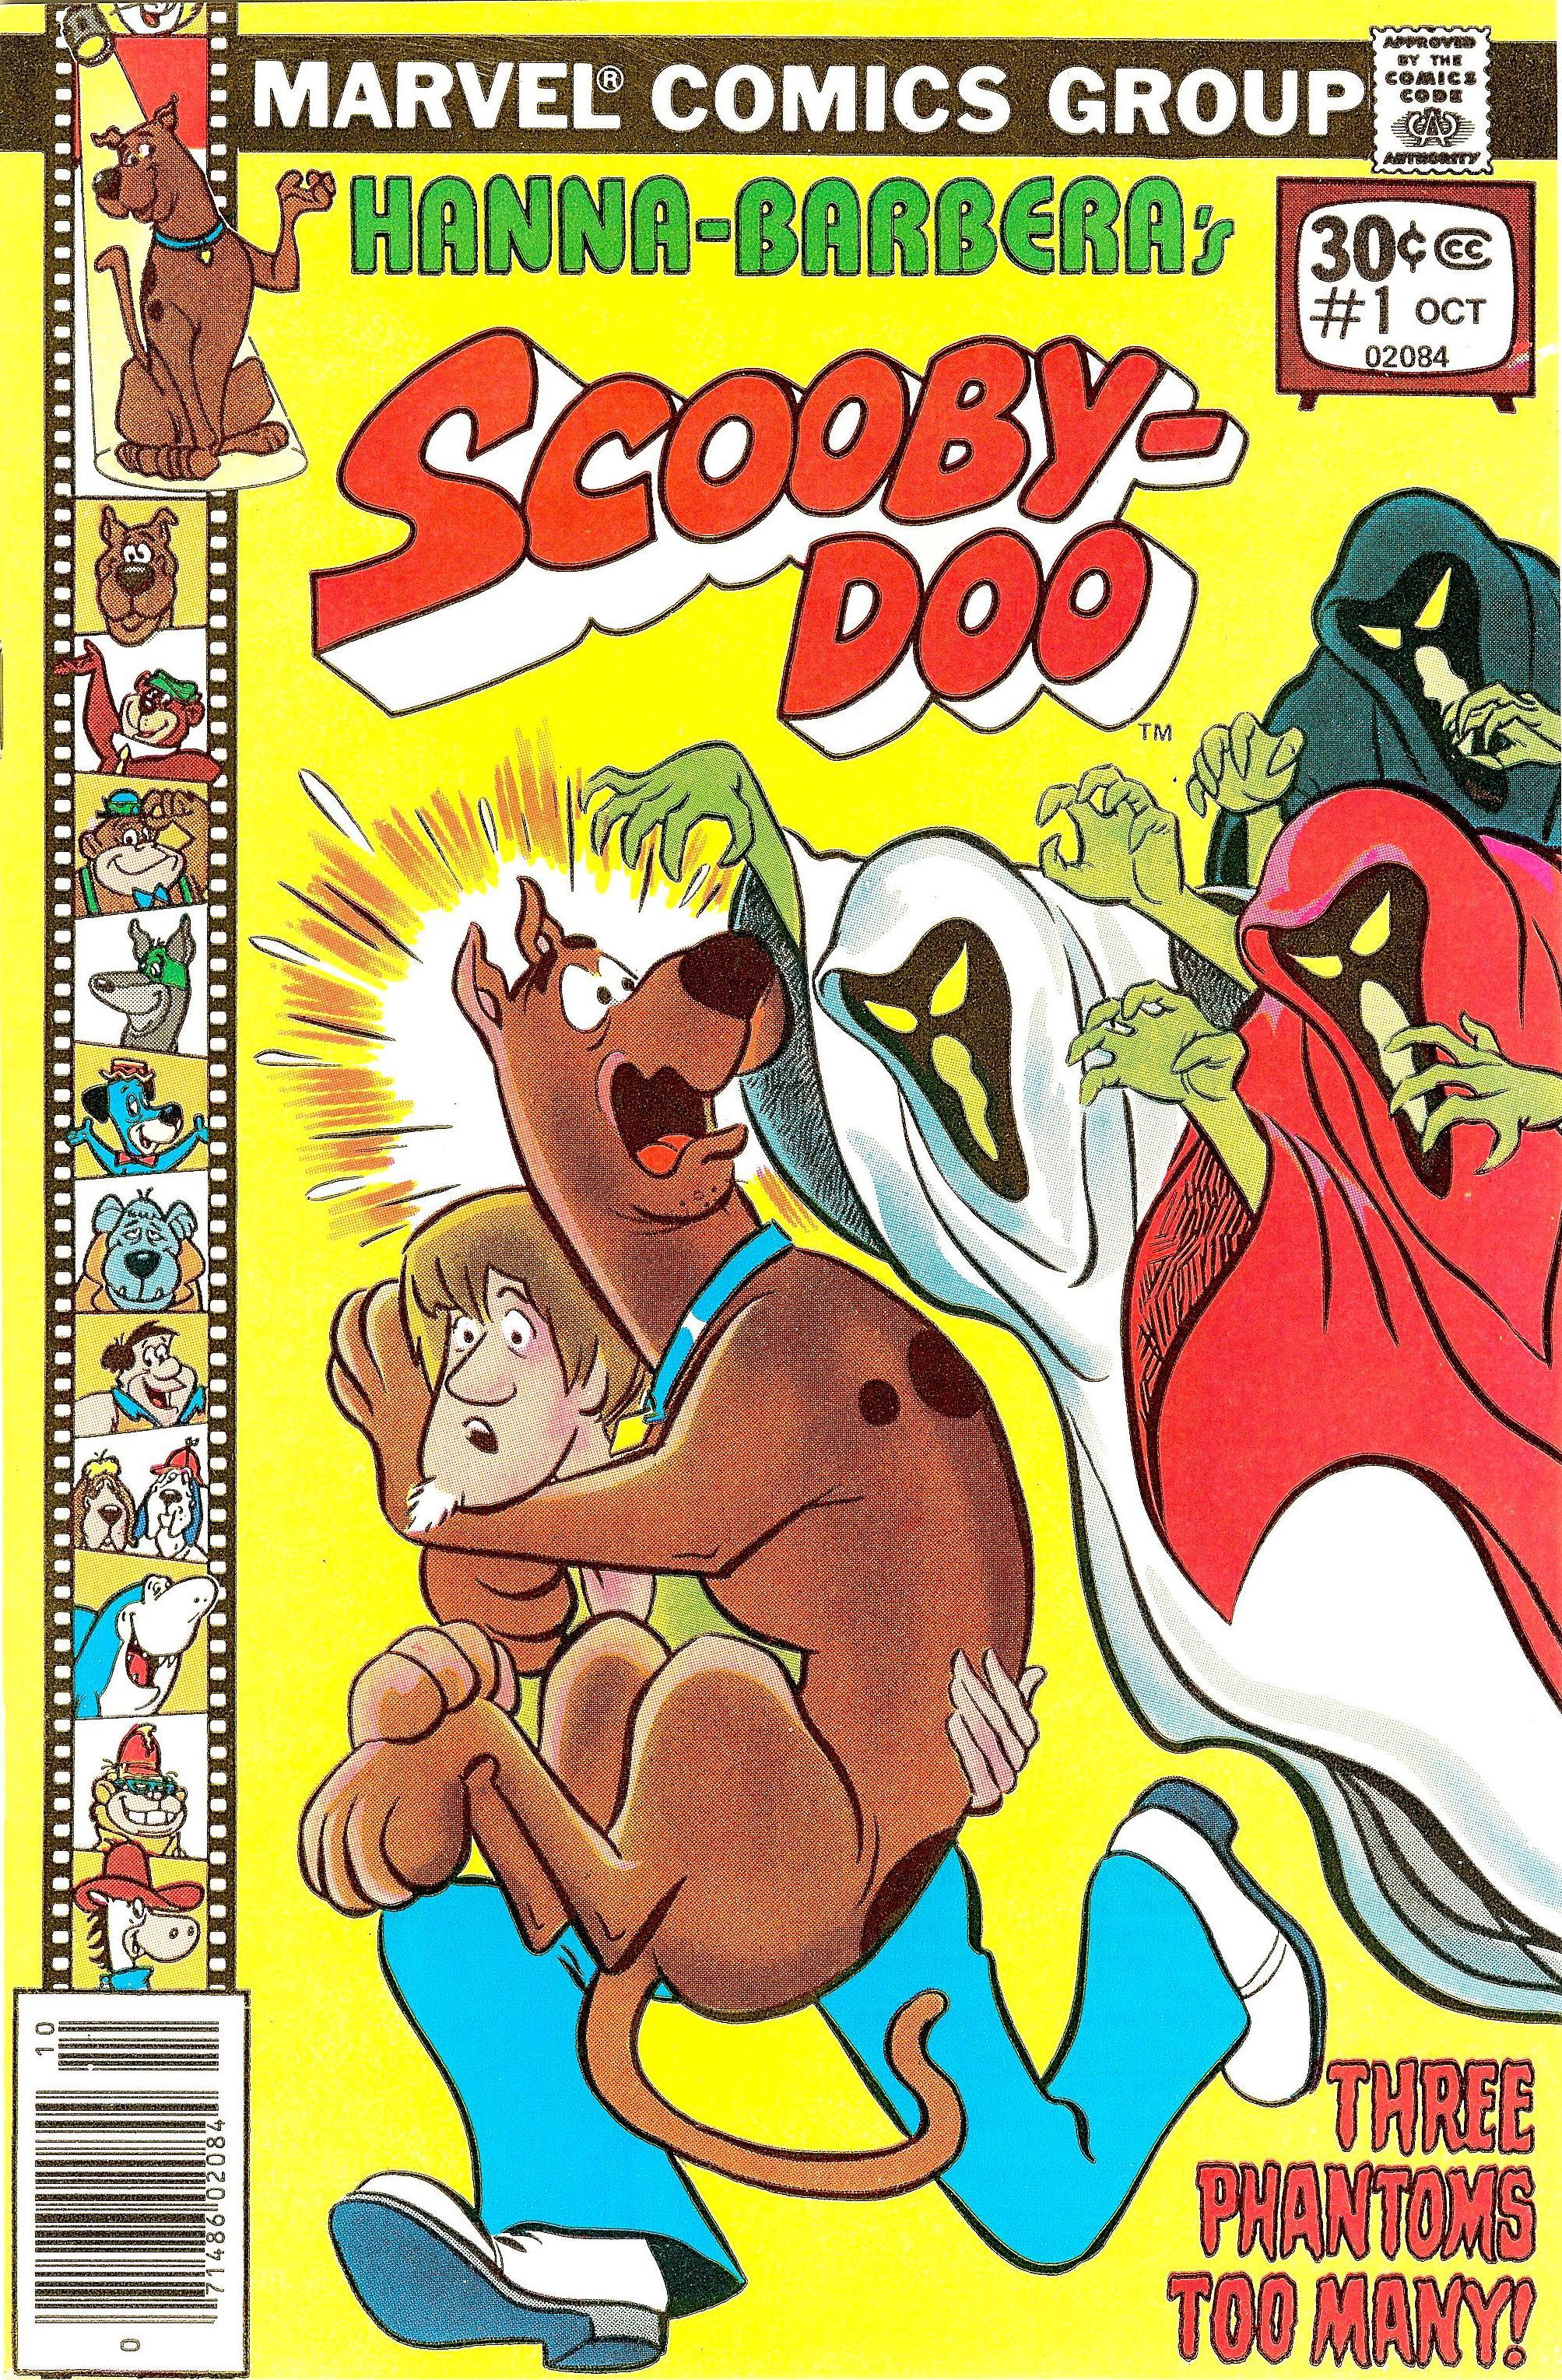 Scooby Doo Vol. 1 #1